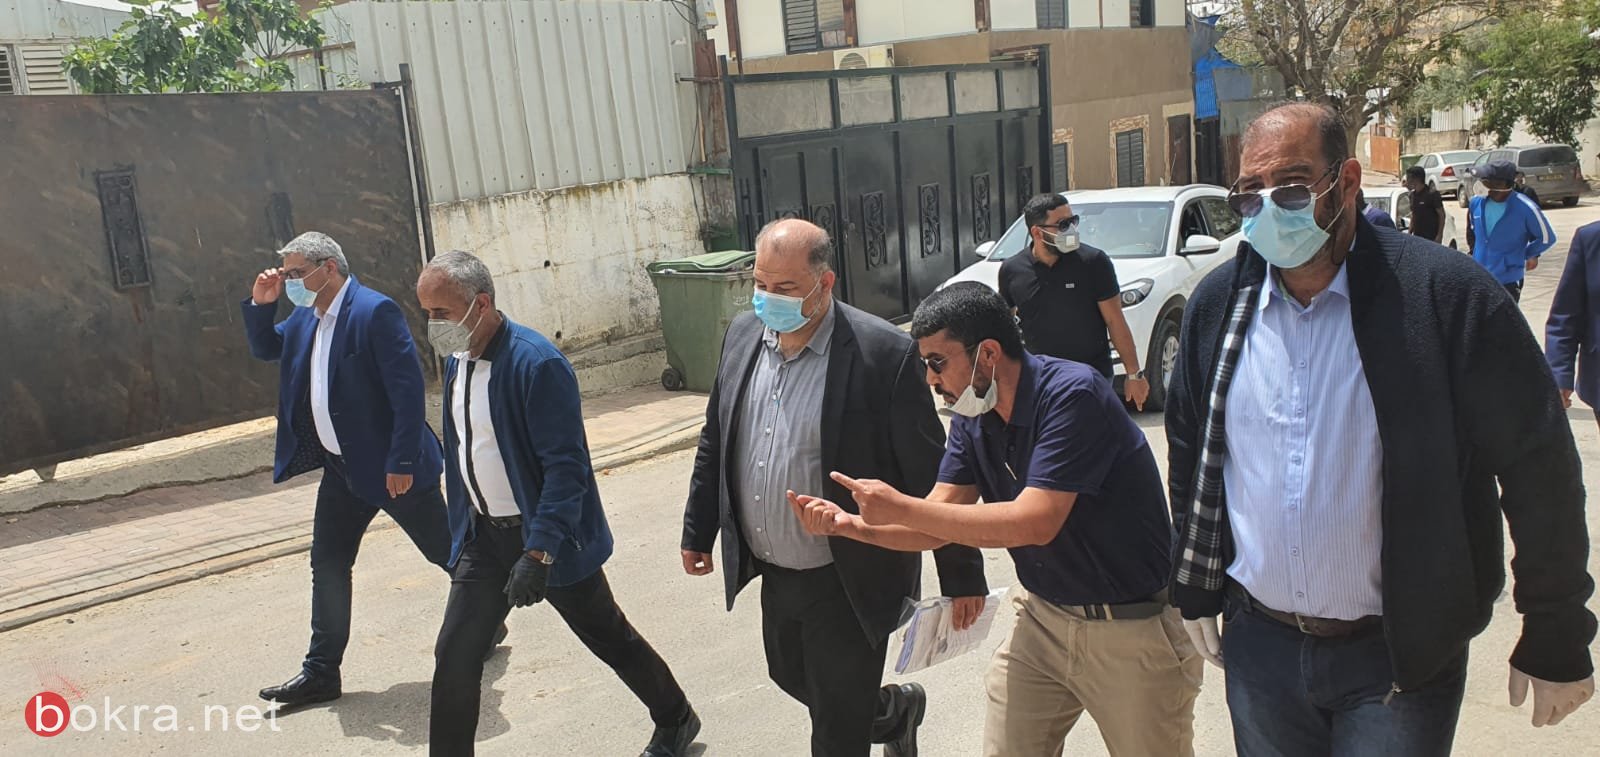 لجنة مكافحة العنف برئاسة د. منصور عباس تنعقد في رهط وتقوم بجولة ميدانية في حي التقوى-2